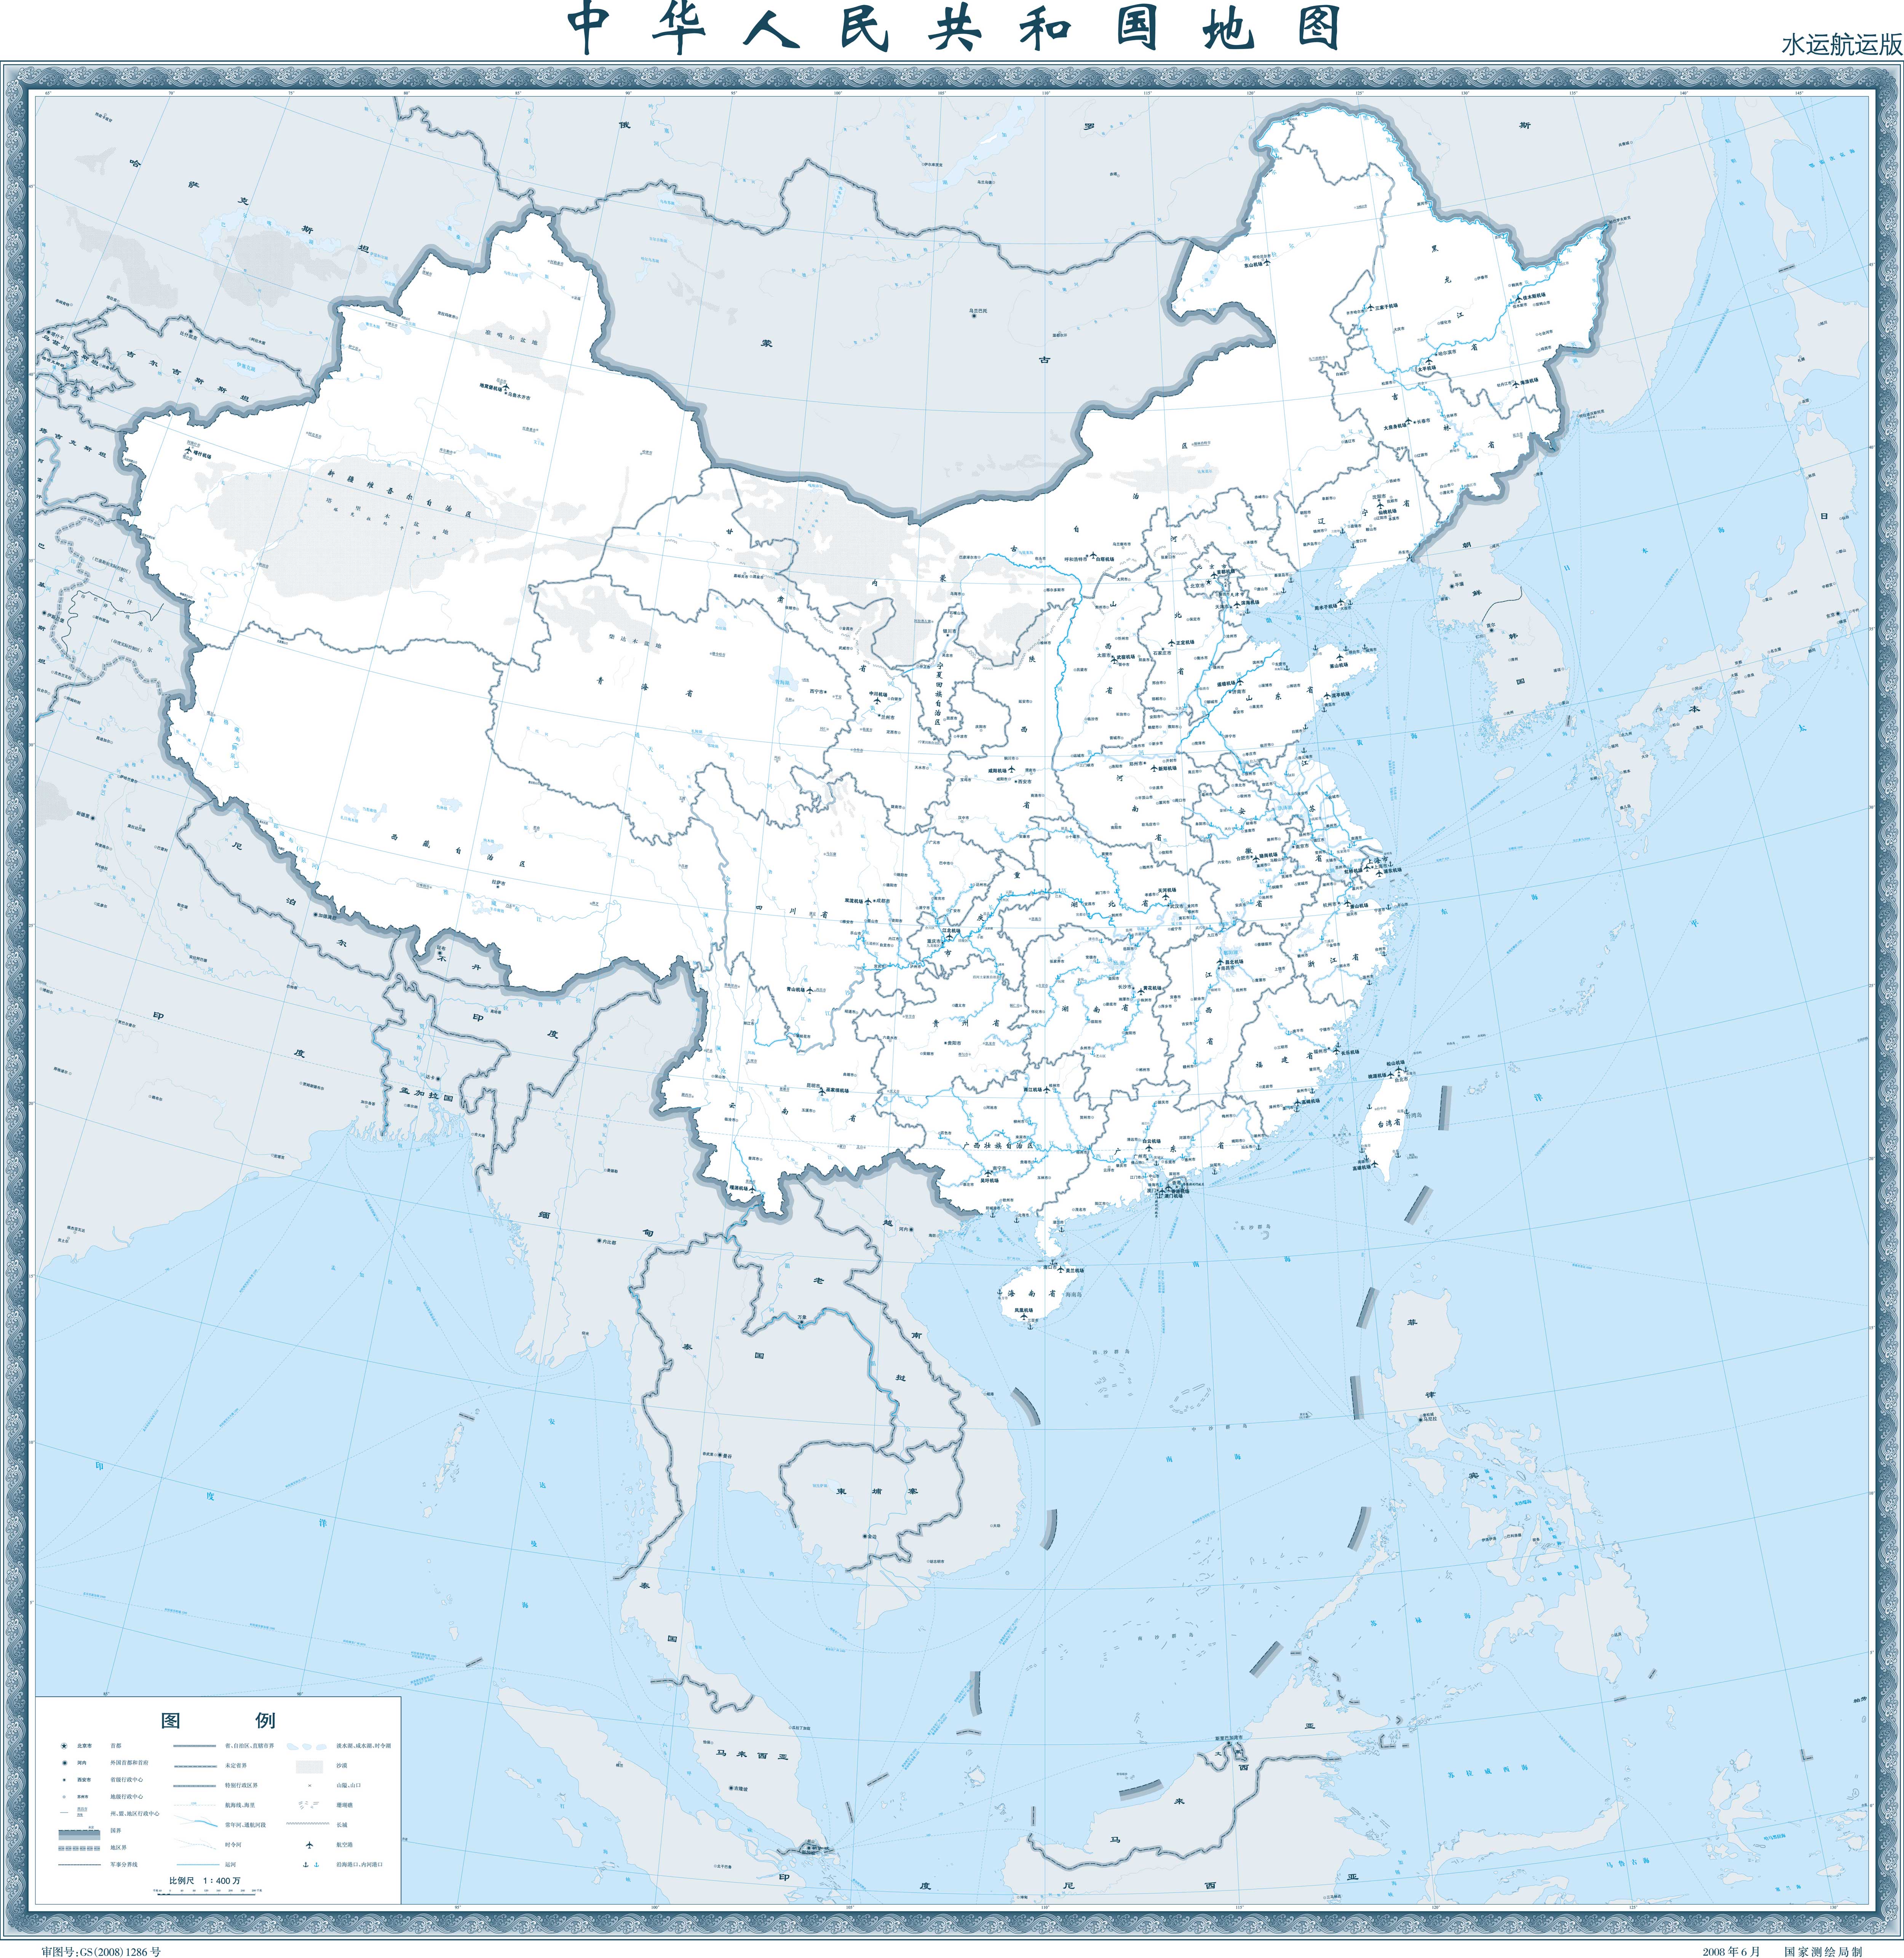 地图窝 中国 >> 中国地图高清版大图(2500万像素)